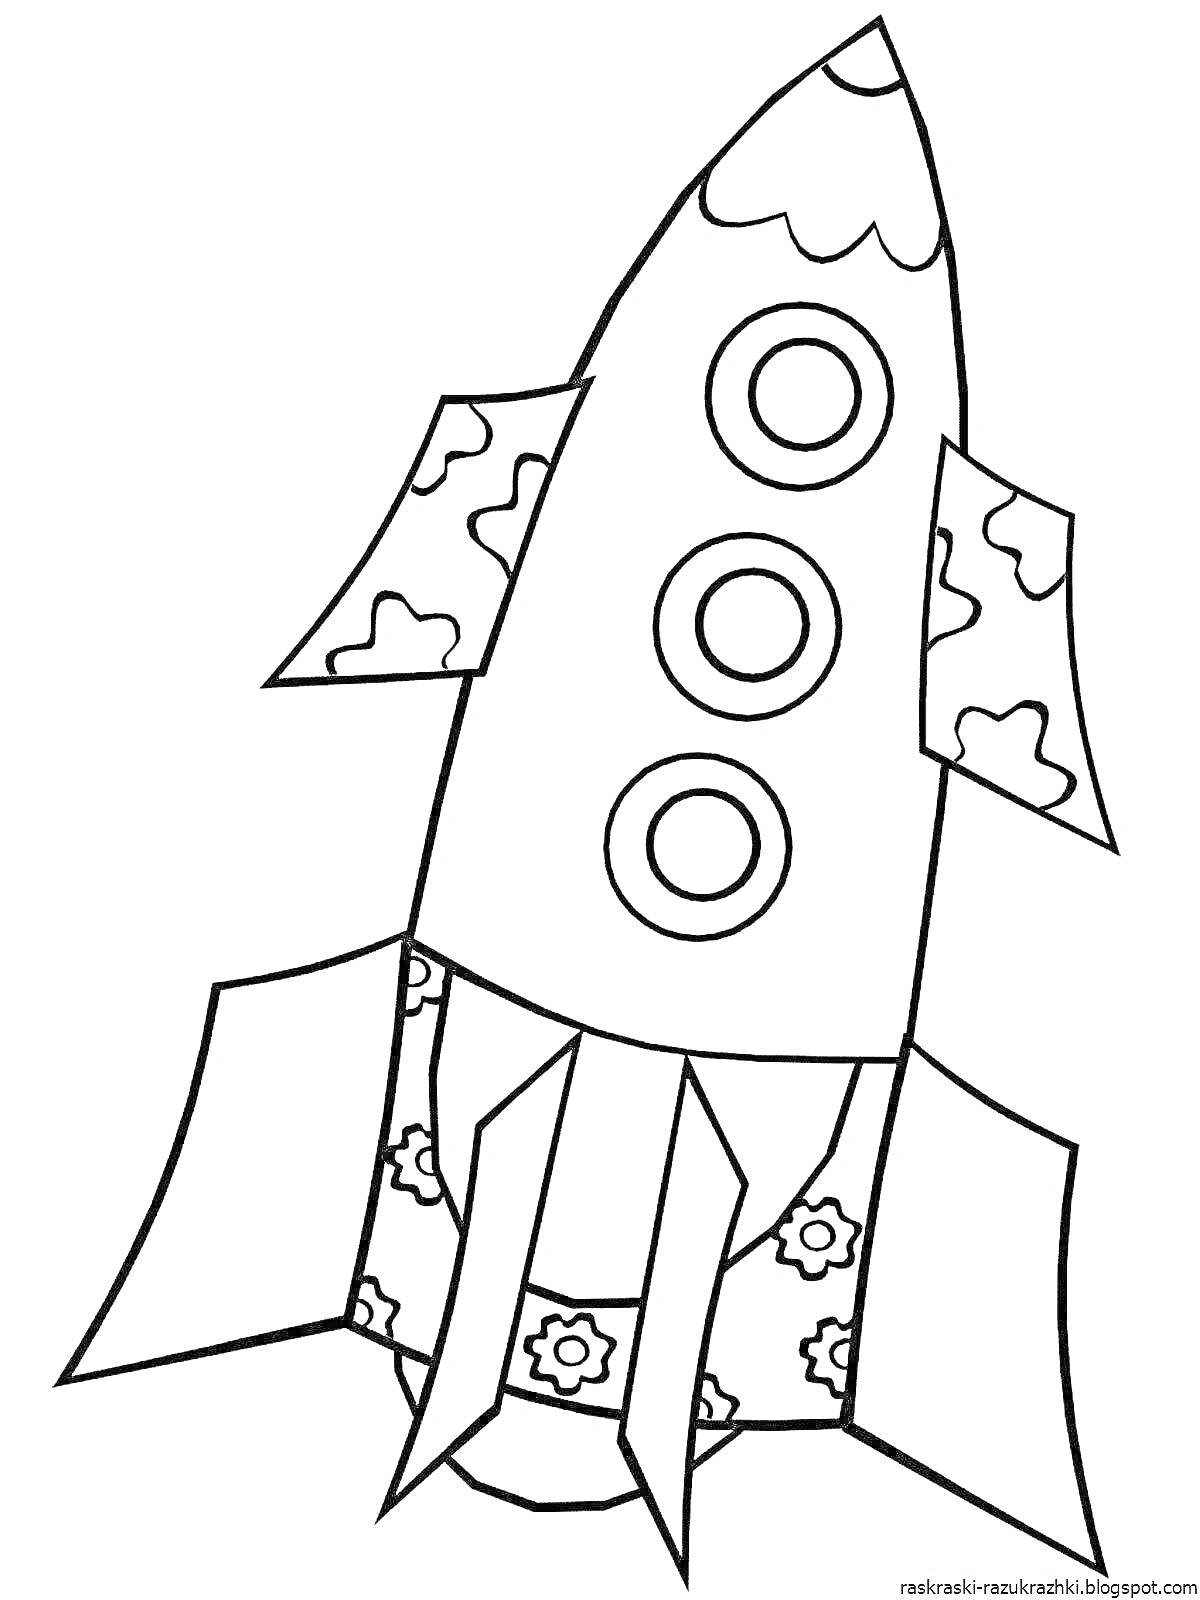 Раскраска Ракета с цветочными узорами и облаками на крыльях и корпусе